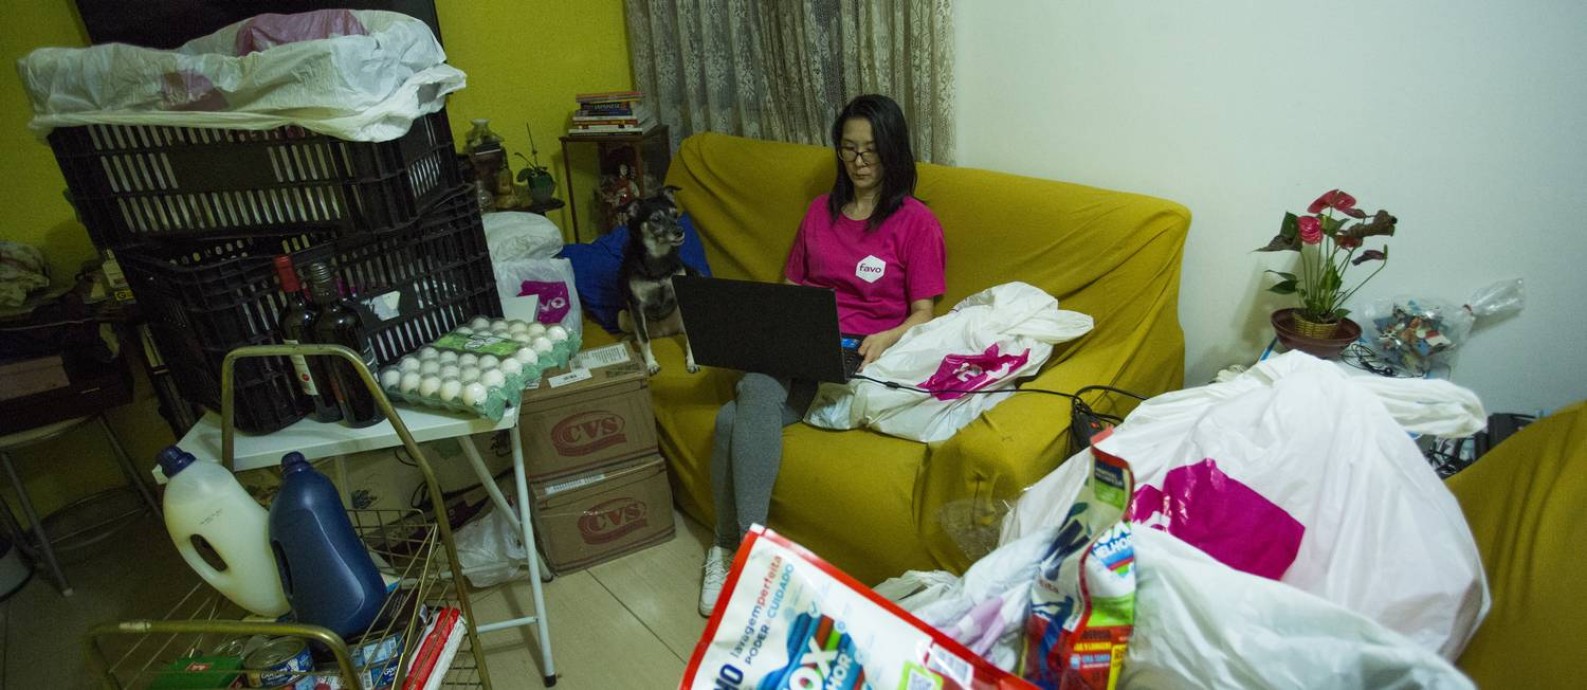 A empreendedora Júlia Saito divite apartamento com as duas filhas, a mãe, um cachorro e com várias entregas, alojadas na sala Foto: Maria Isabel Oliveira / Agência O Globo